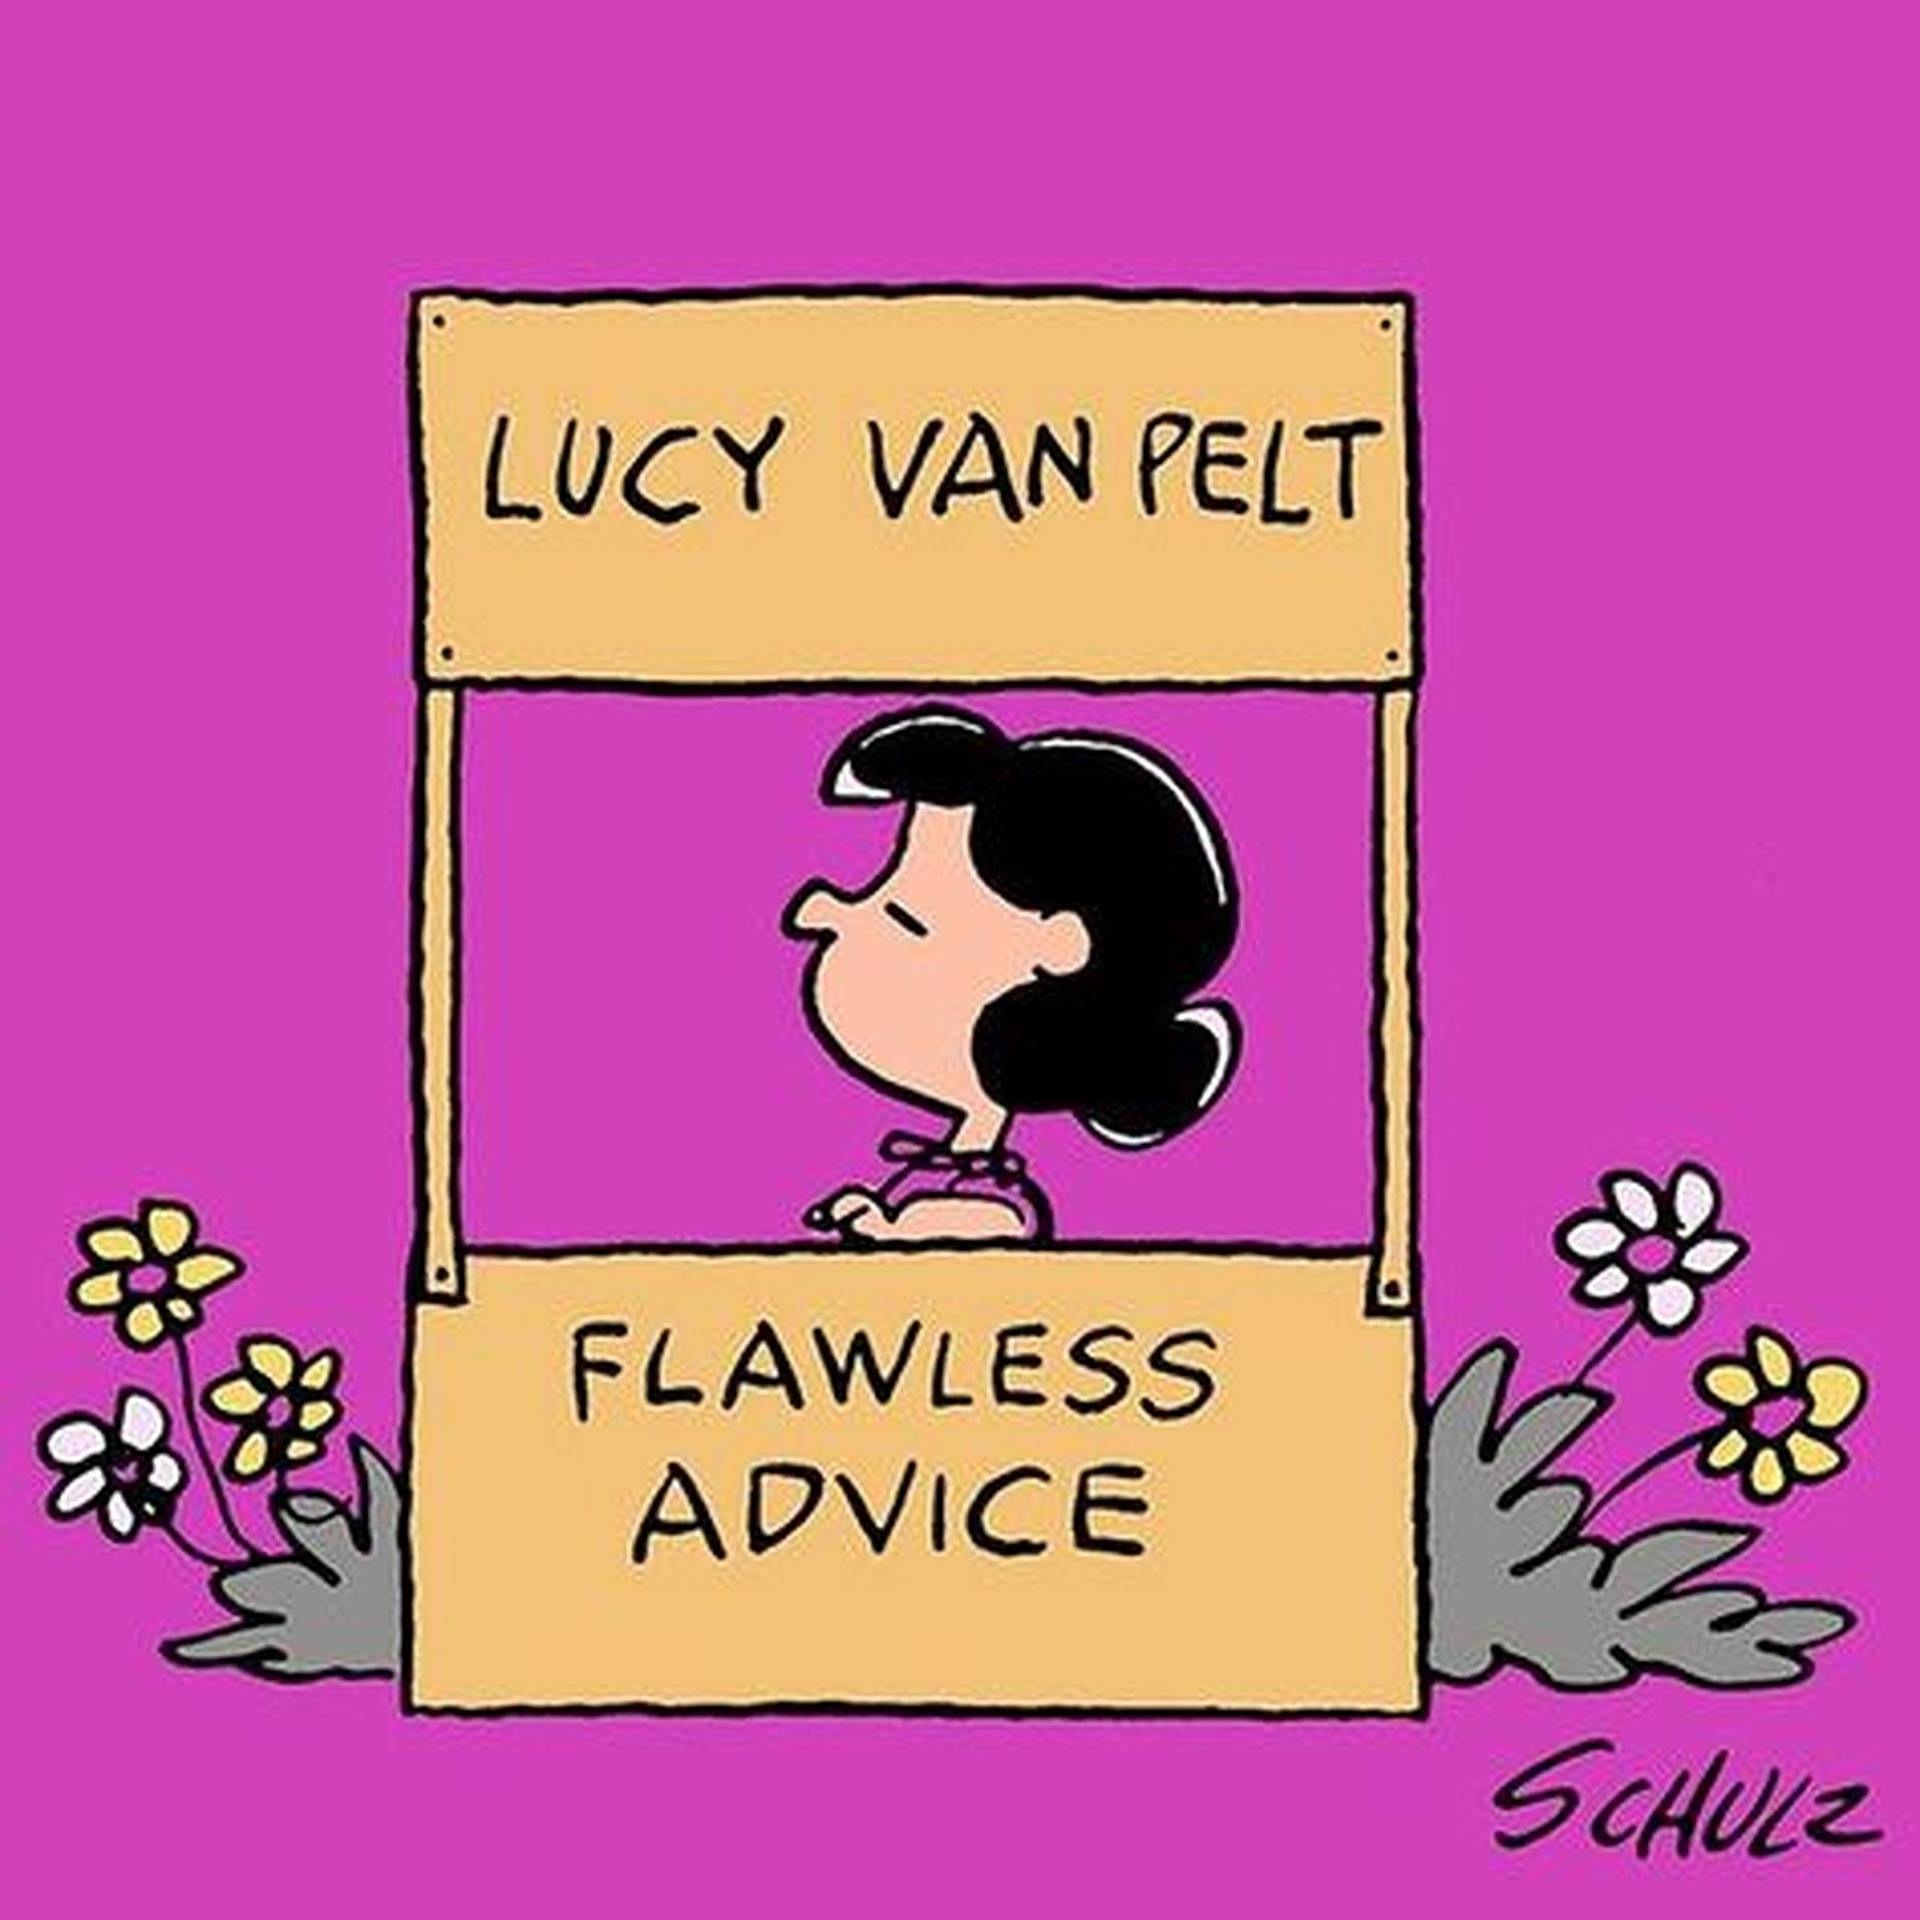 Lucy Van Pelt yder fejlfri rådgivning Wallpaper